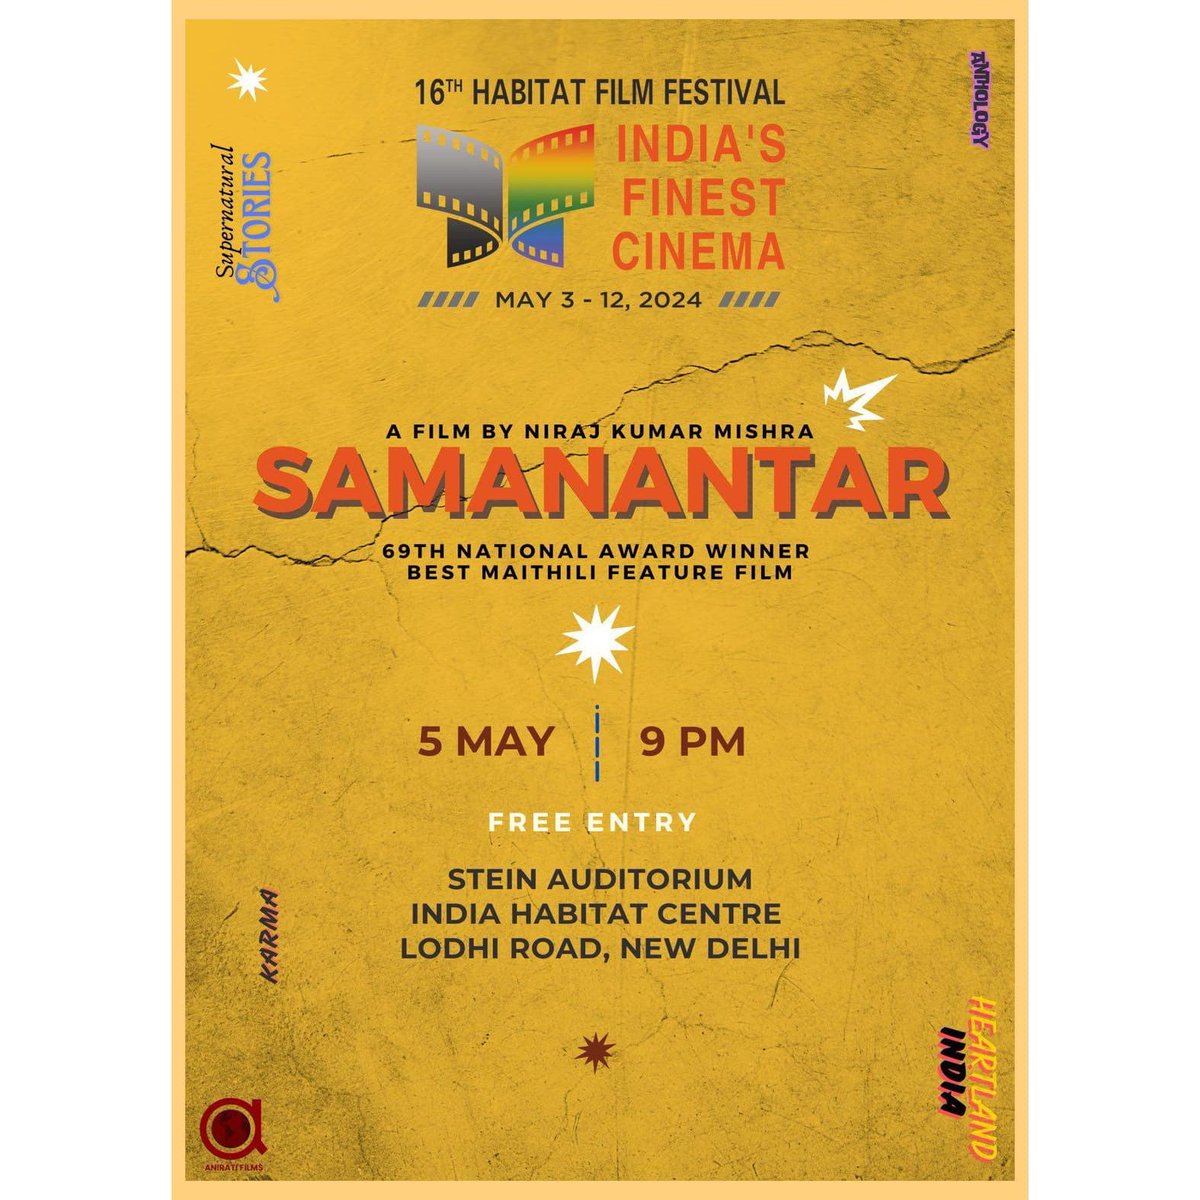 दिल्ली में छी? त आउ न 5 मई राइत 09 बजे @IHCDelhi @arf_nkm जीके उत्कृष्ट प्रस्तुति जाहिके पछिला बरख राष्ट्रिय पुरस्कार भेटल, मैथिली भाषी सबलेल गर्वक विषय बनल। त आउ कनेक समय निकालि आ देखू इ सिनेमाके। लिंक निच्चा थ्रेड में अछि व दिक्कत हूए त मैसेज करि, आग्रह। #Maithili